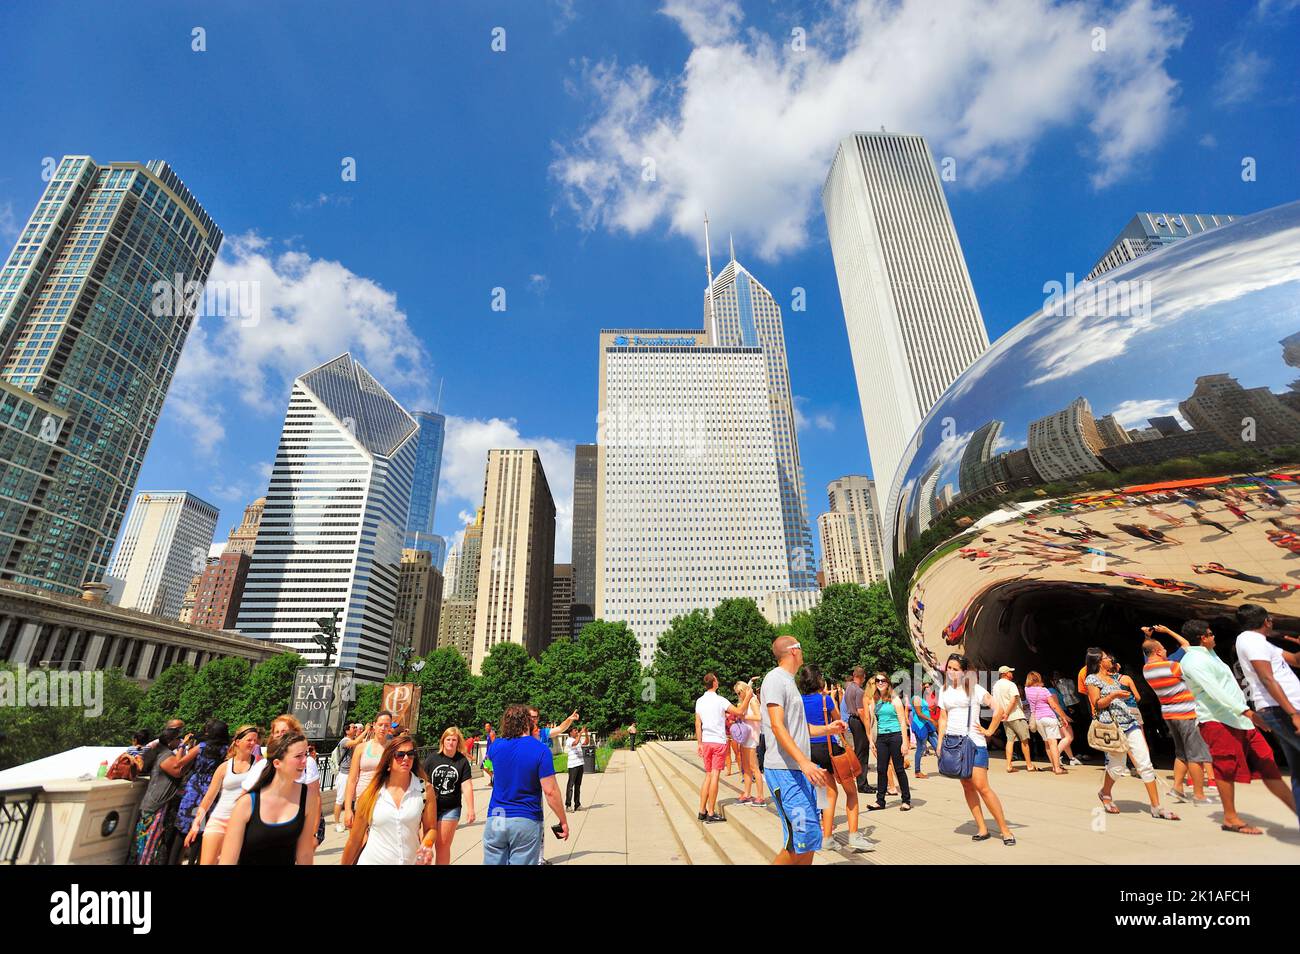 Chicago, Illinois, Stati Uniti. La gente si affolla in una delle attrazioni artistiche più popolari della città, la scultura Cloud Gate nel Millennium Park. Foto Stock